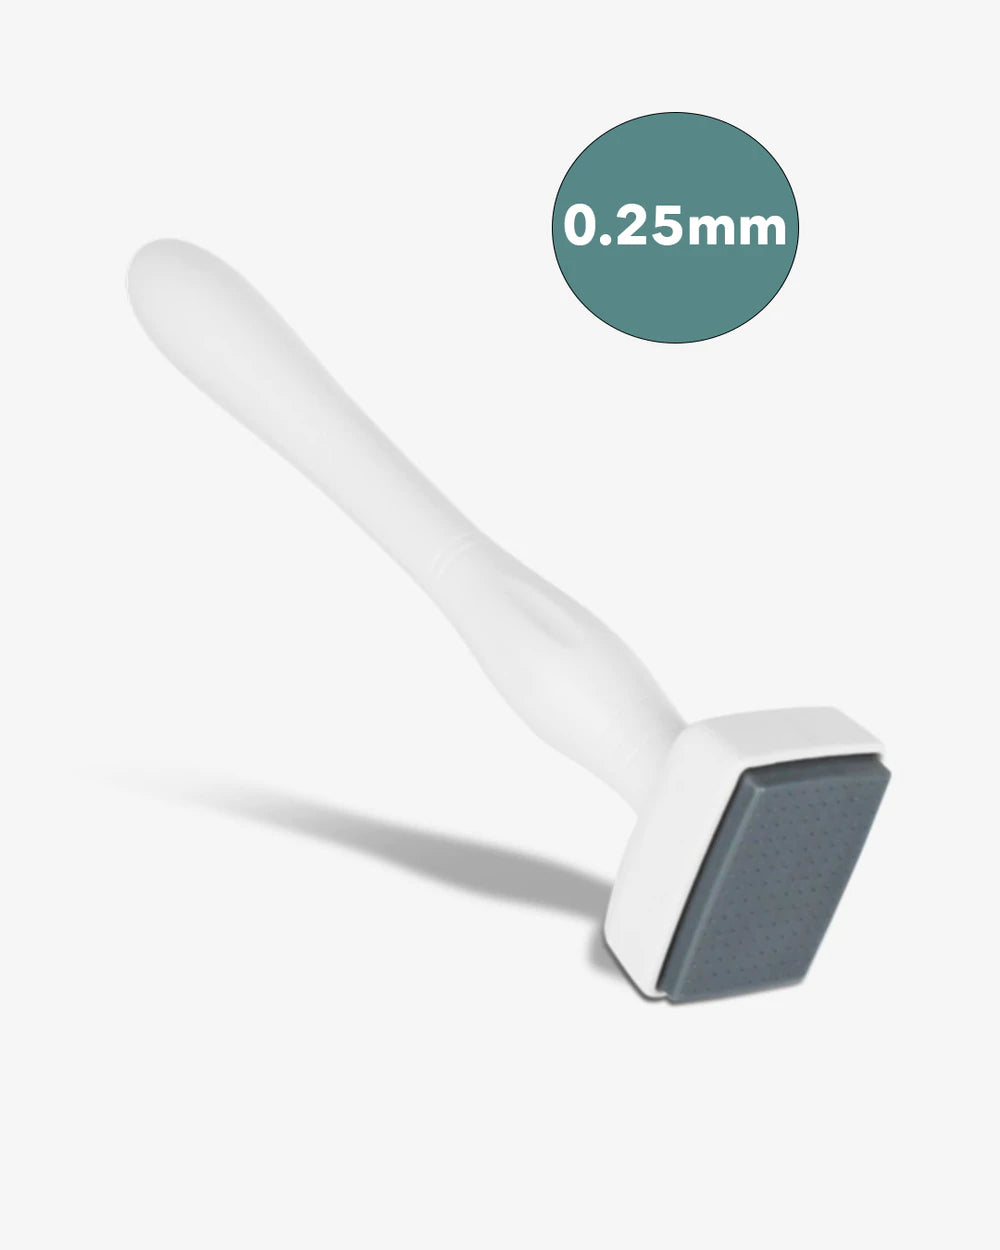 Micro Needle Threader, Poppy – Benzie Design